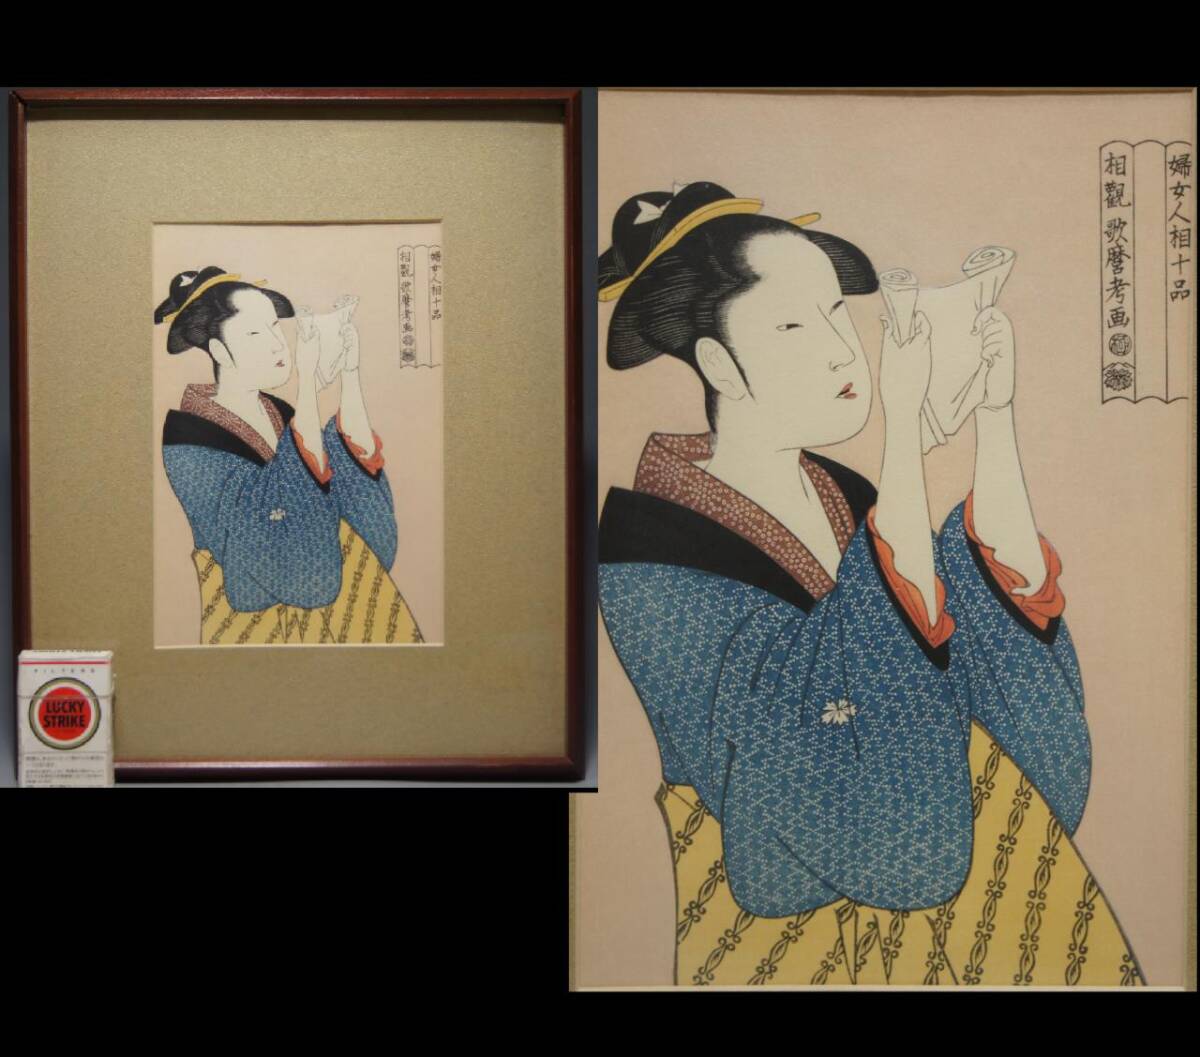 Kitagawa Utamaro grabado en madera ``Retratos de mujeres: Mujer leyendo una carta'' Pasamanos Ukiyo-e Reimpresión enmarcada Nishiki-e Mujer hermosa Mujer Mujer, cuadro, Ukiyo-e, imprimir, Hermosa mujer pintando